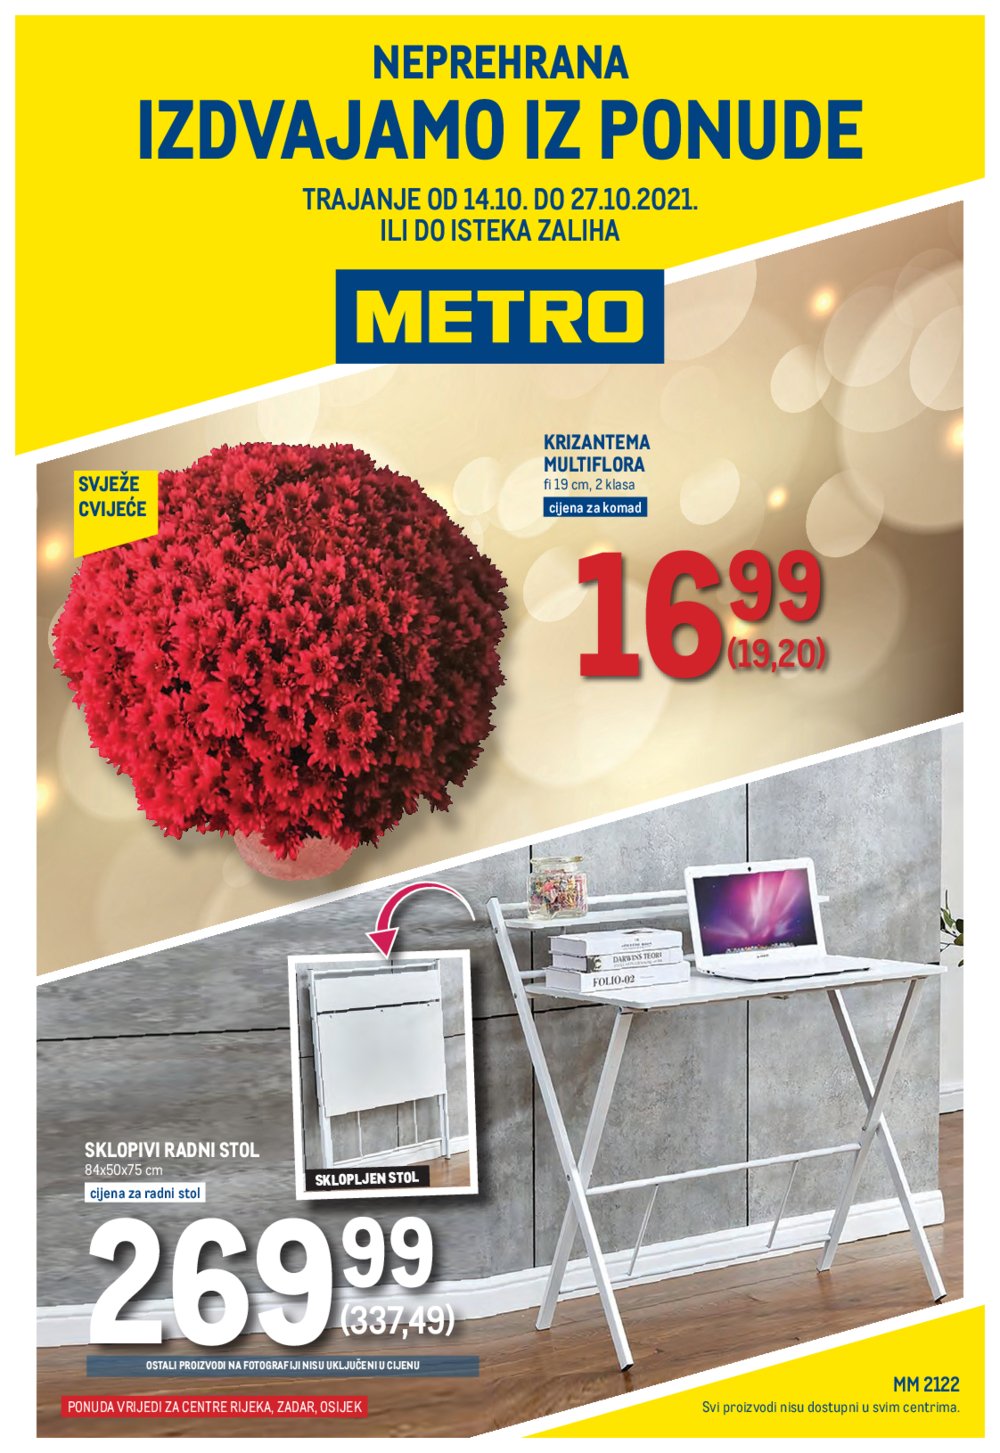 Metro katalog Neprehrana 14.10.-27.10.2021. Rijeka, Zadar, Osijek